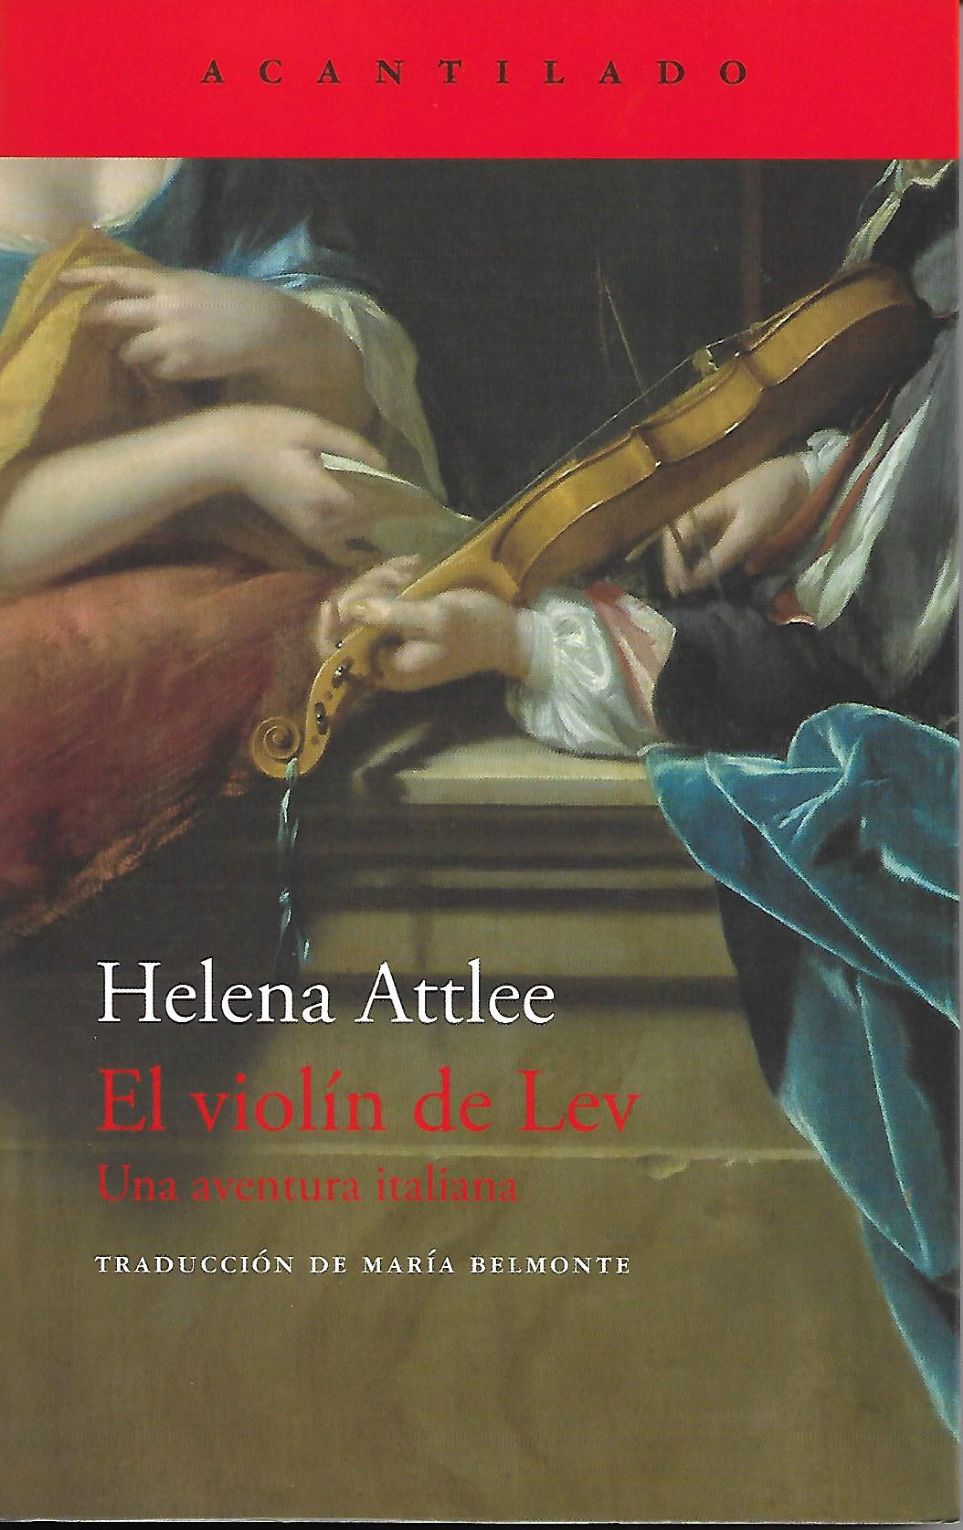 El violn de Lev de Helena Attlee [Acantilado]